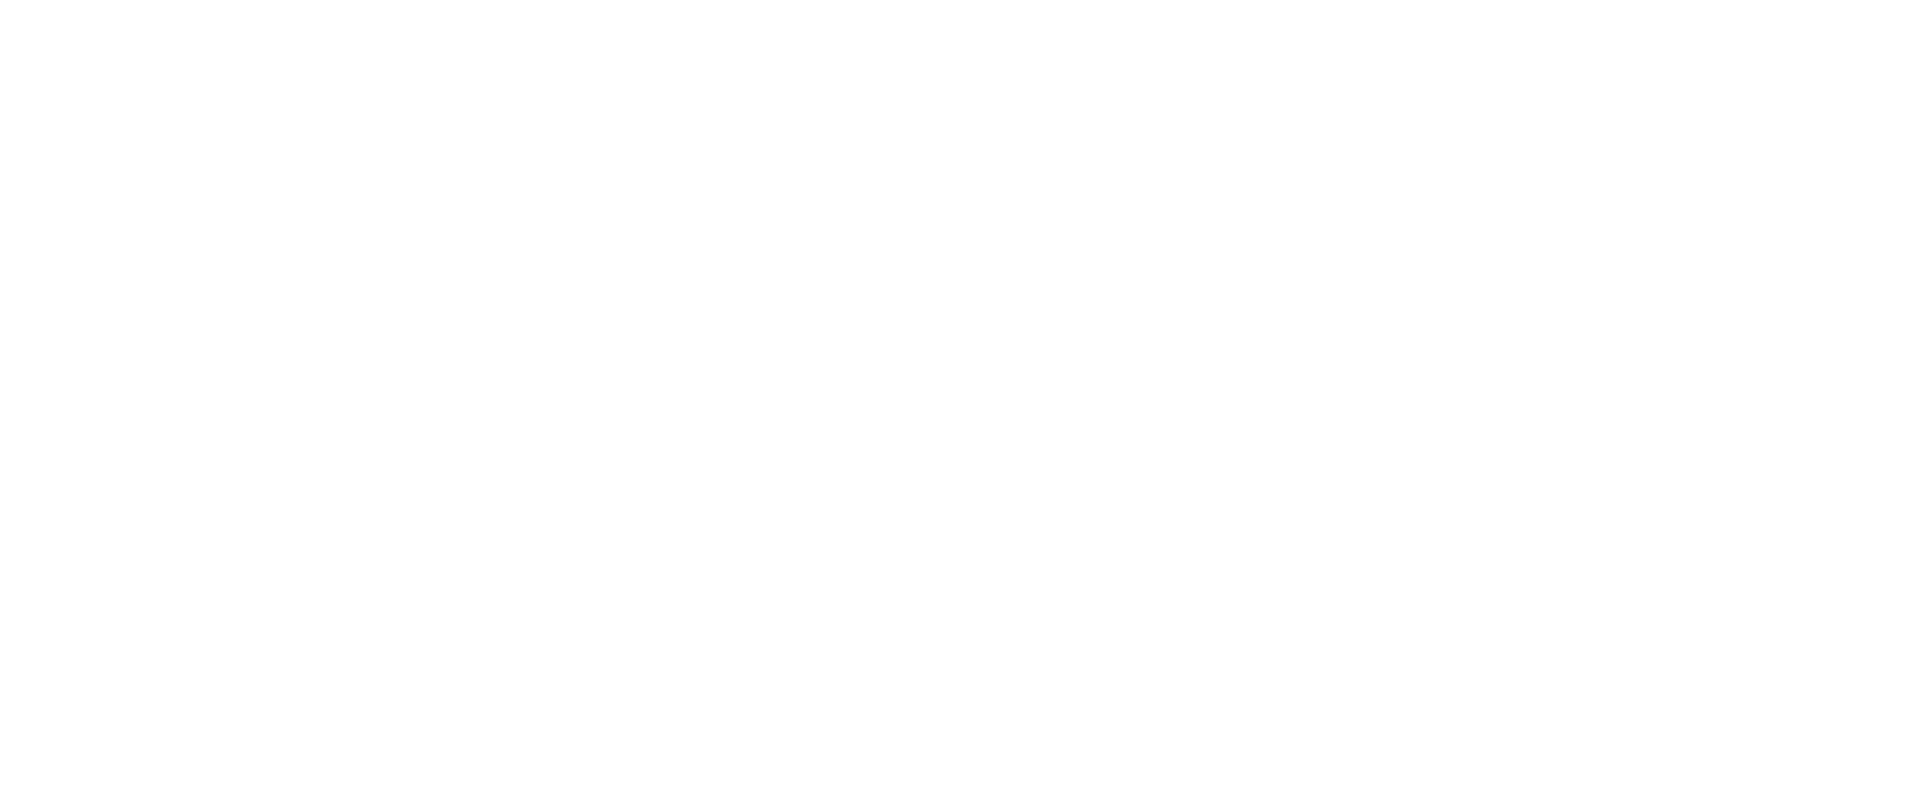 Aberdeen City Music School